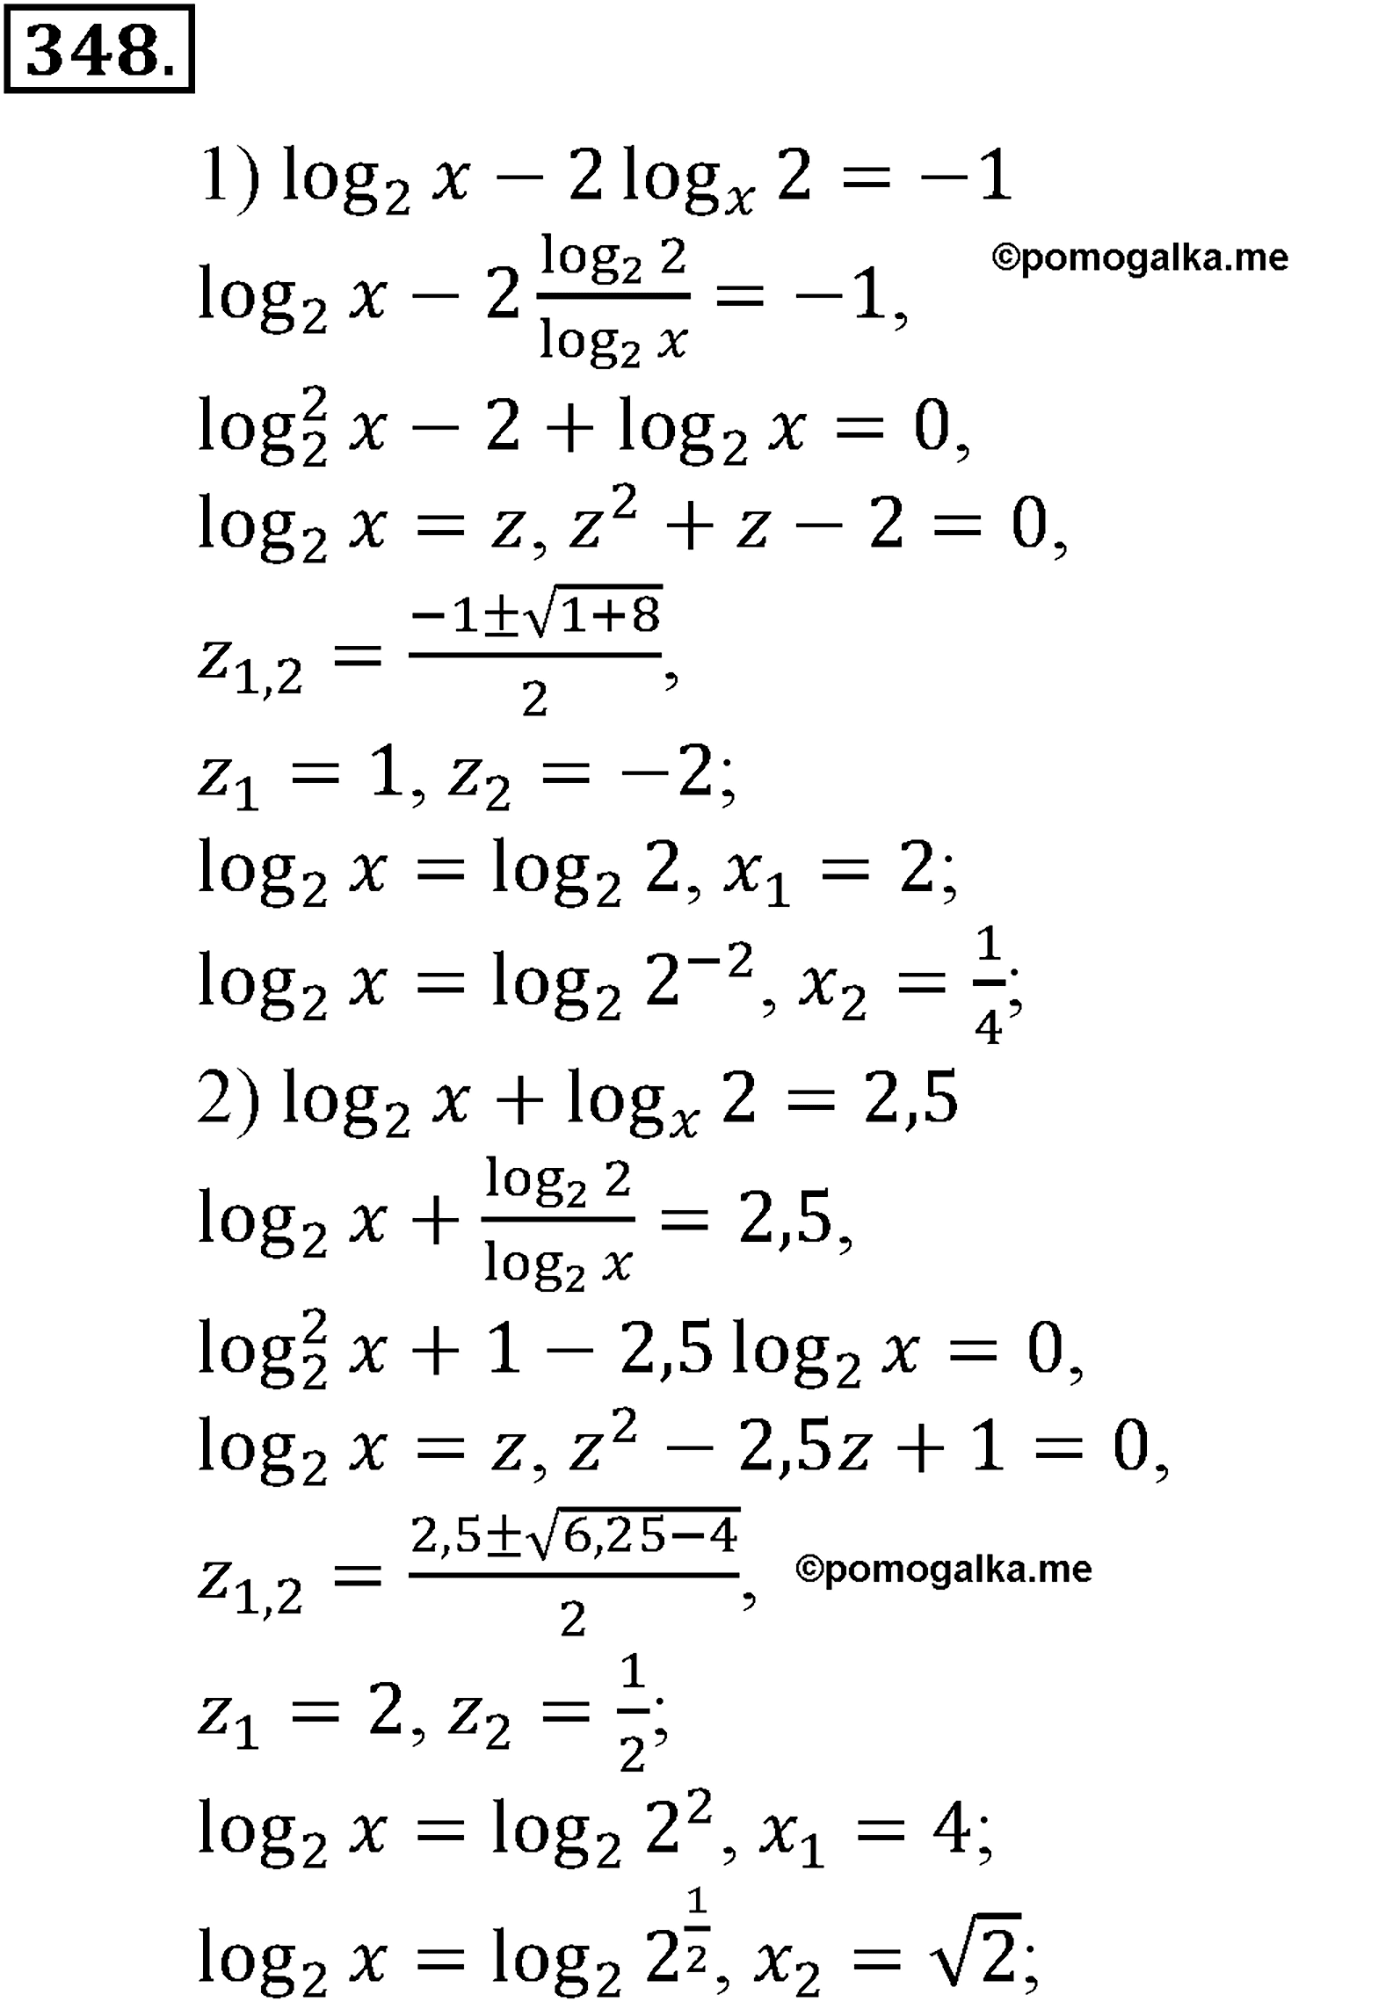 разбор задачи №348 по алгебре за 10-11 класс из учебника Алимова, Колягина